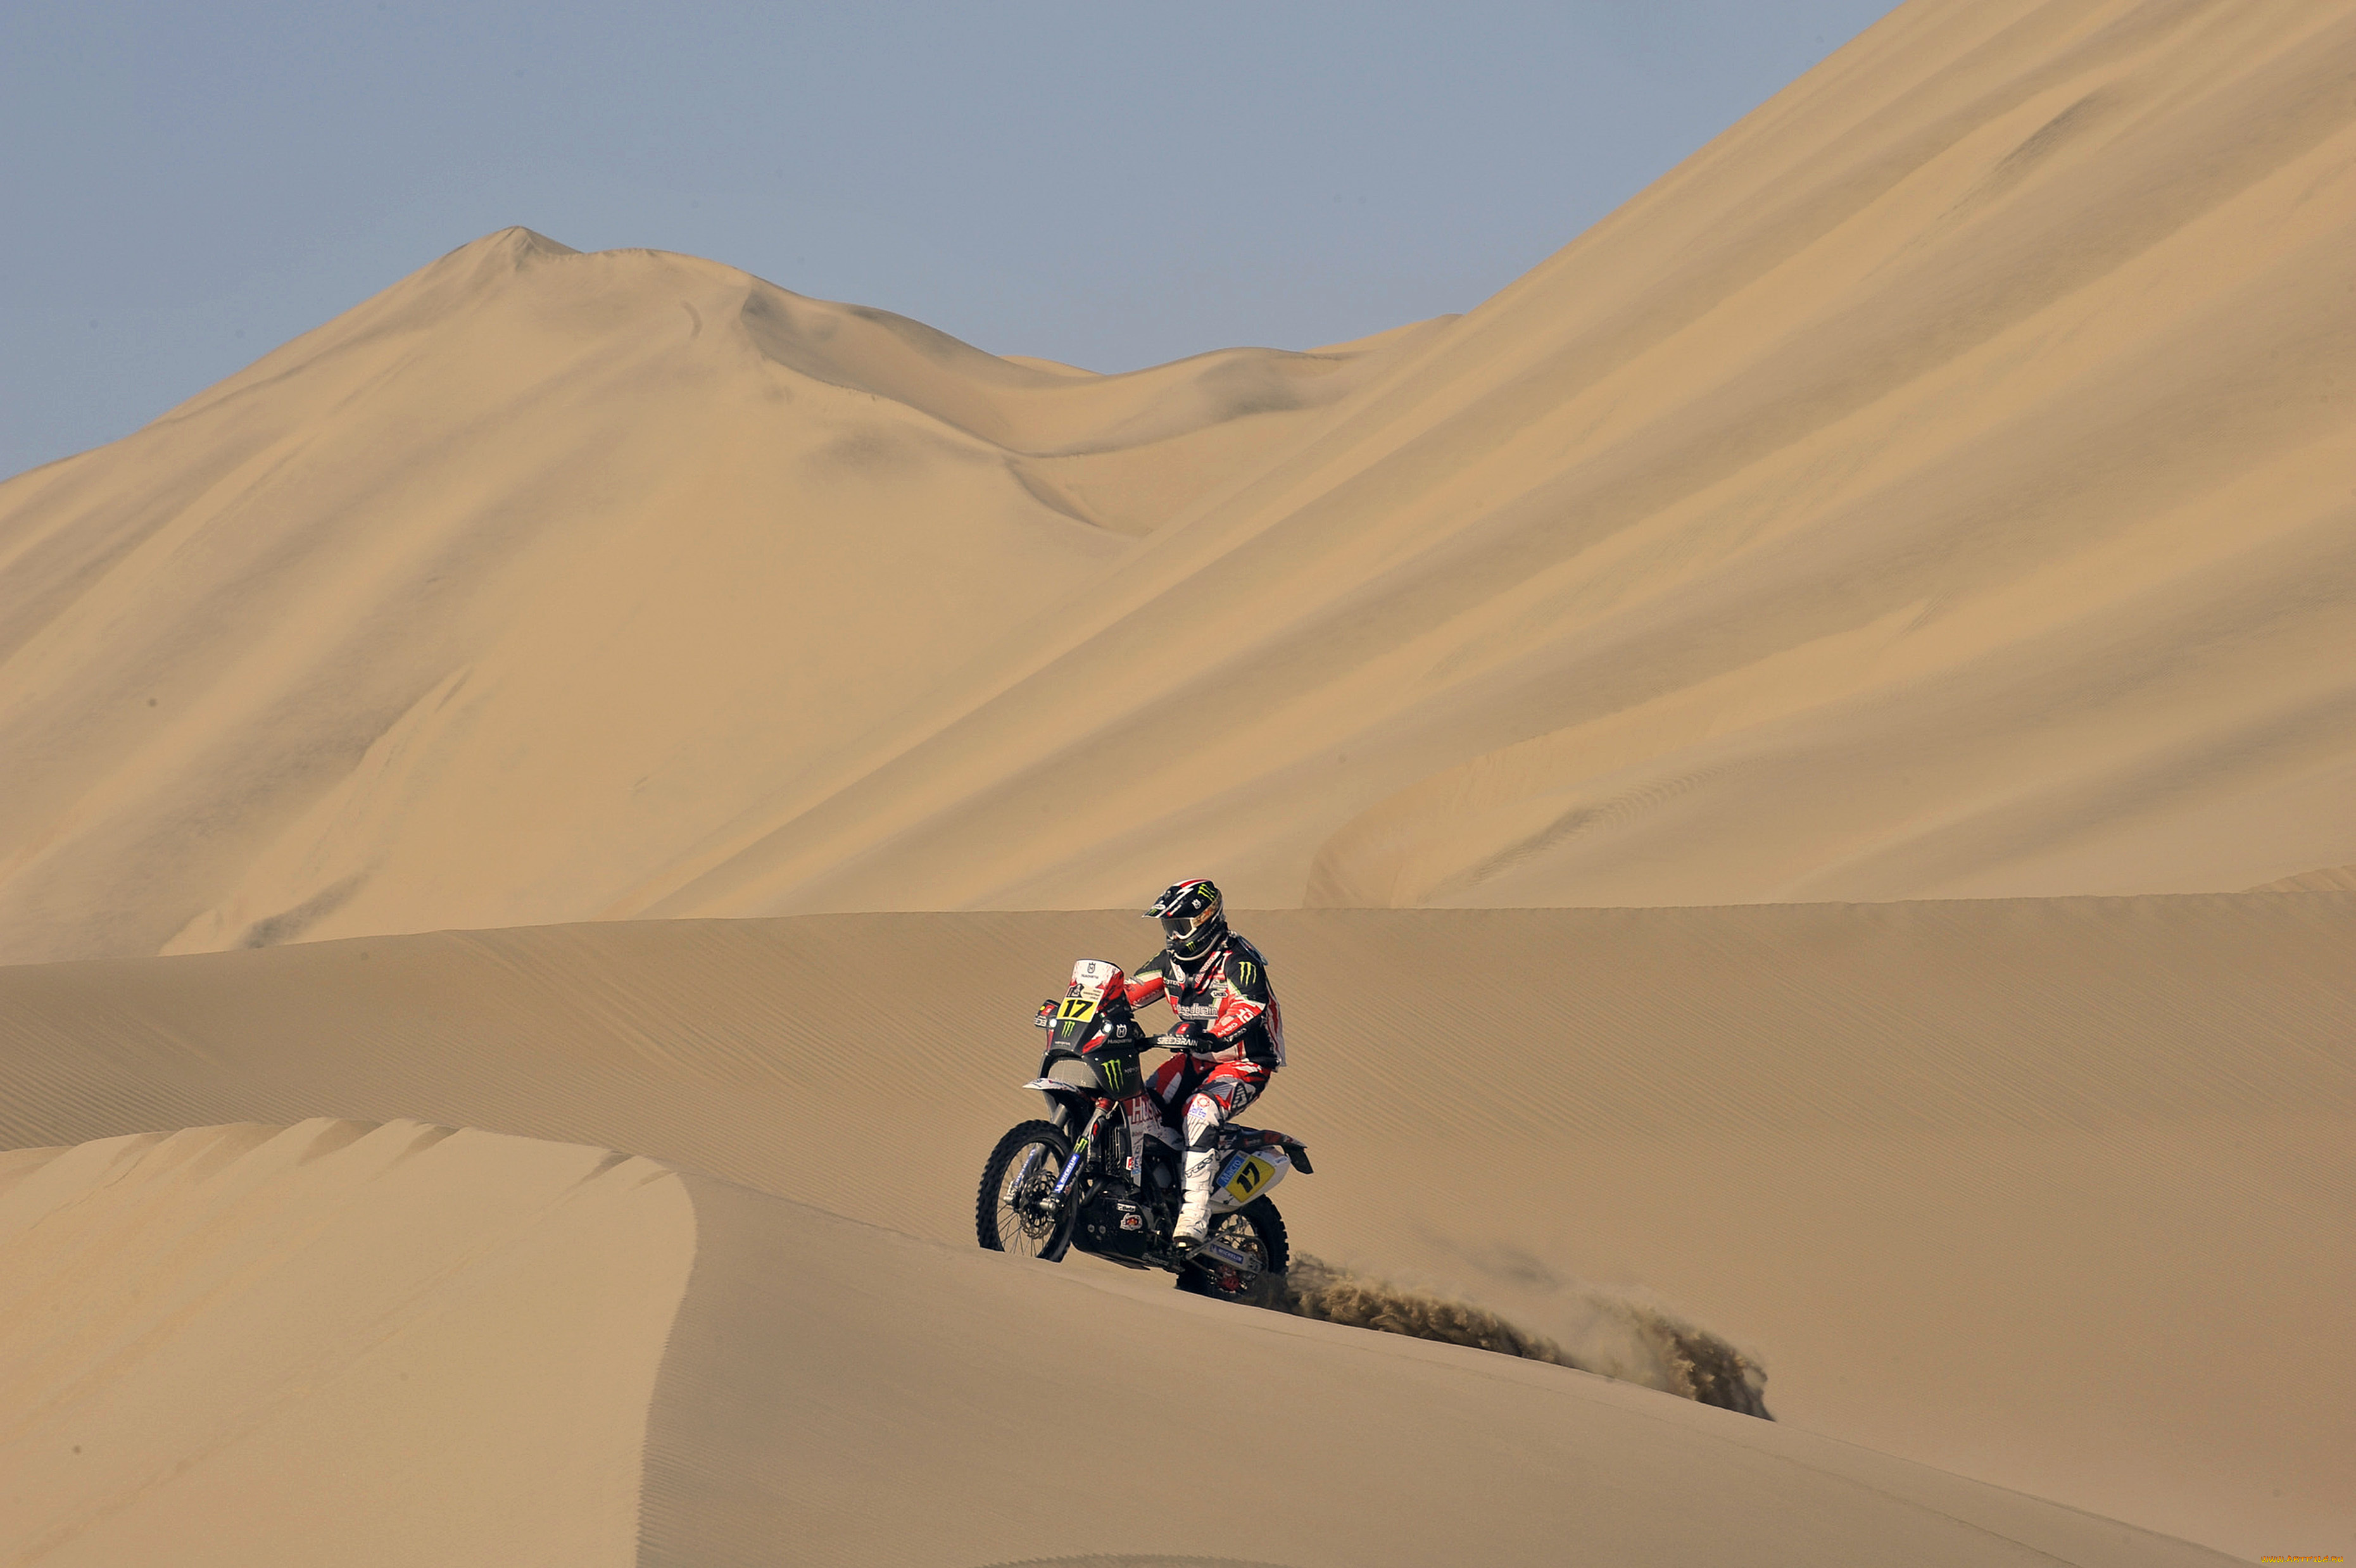 спорт, мотокросс, жара, небо, пустыня, мото, дюна, песок, мотоцикл, dakar